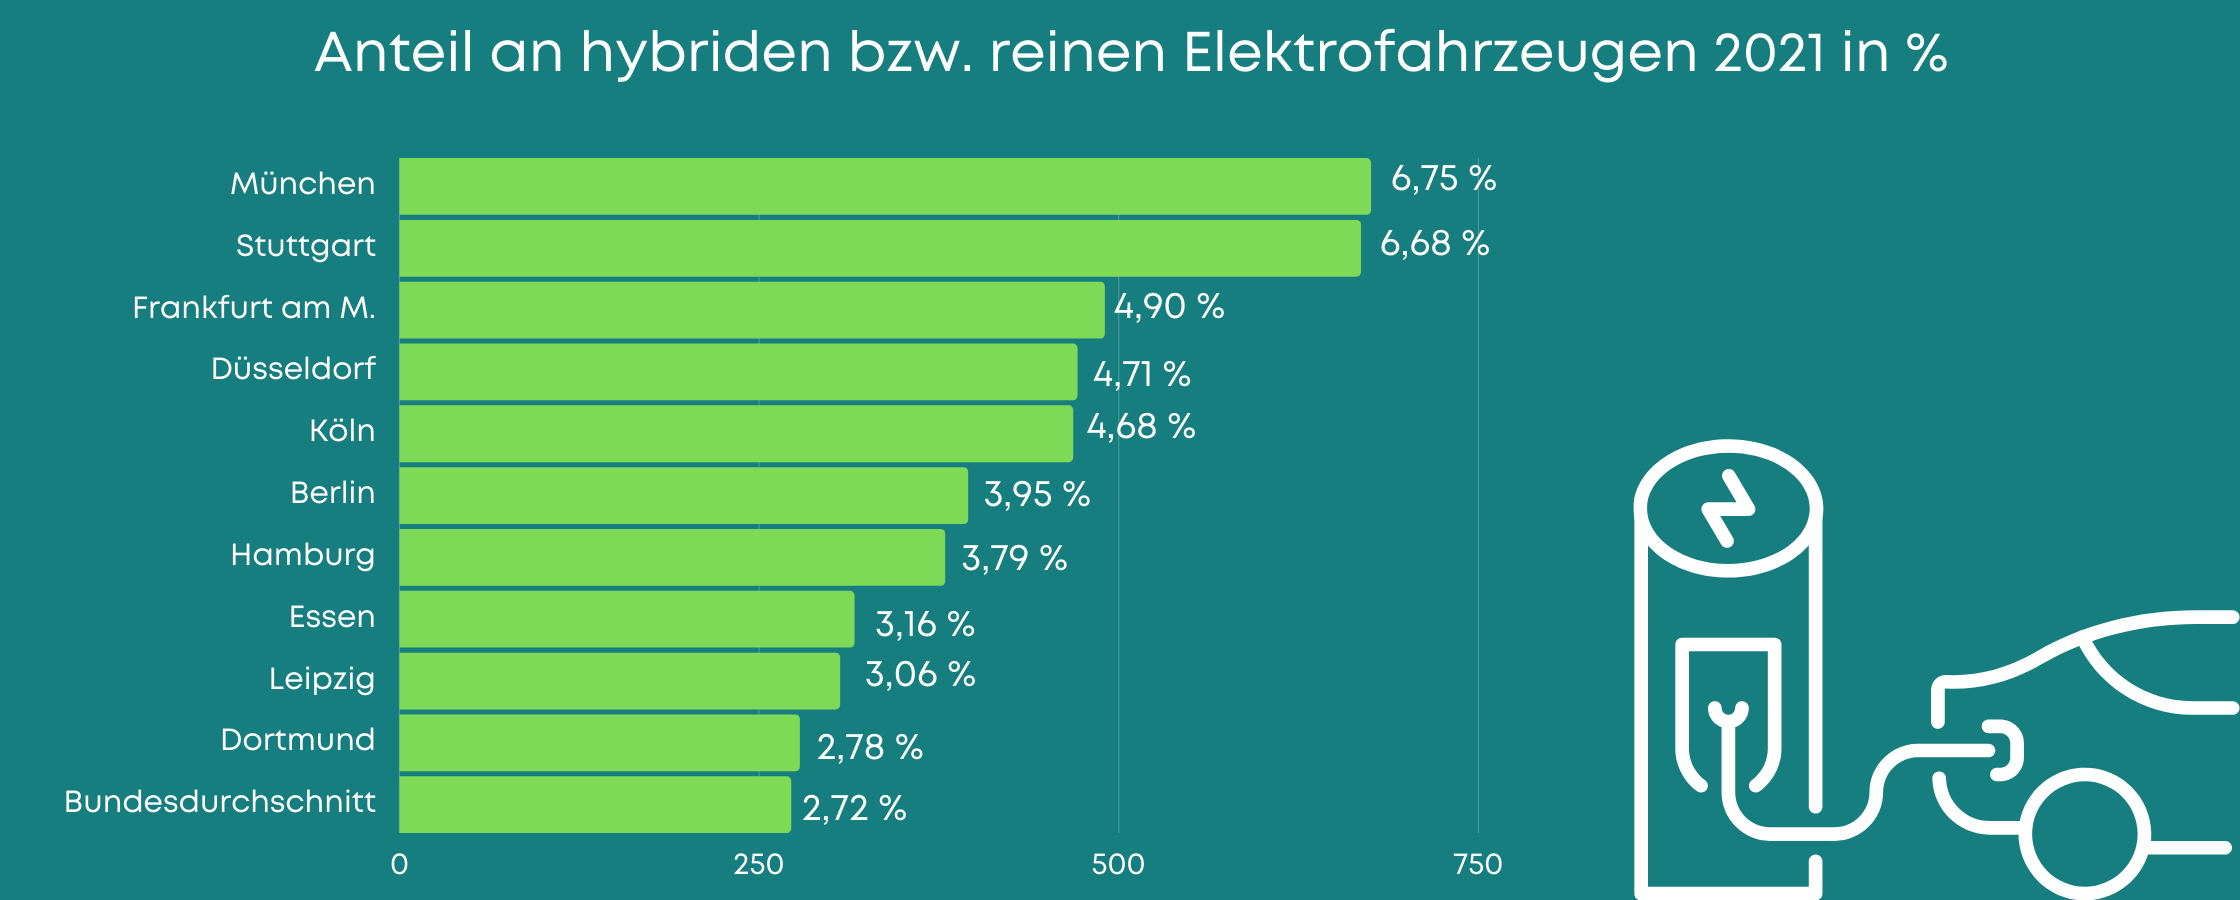 Anteile der Hybrid- bzw. reinen Elektroautos in den 10 größten Städten Deutschlands